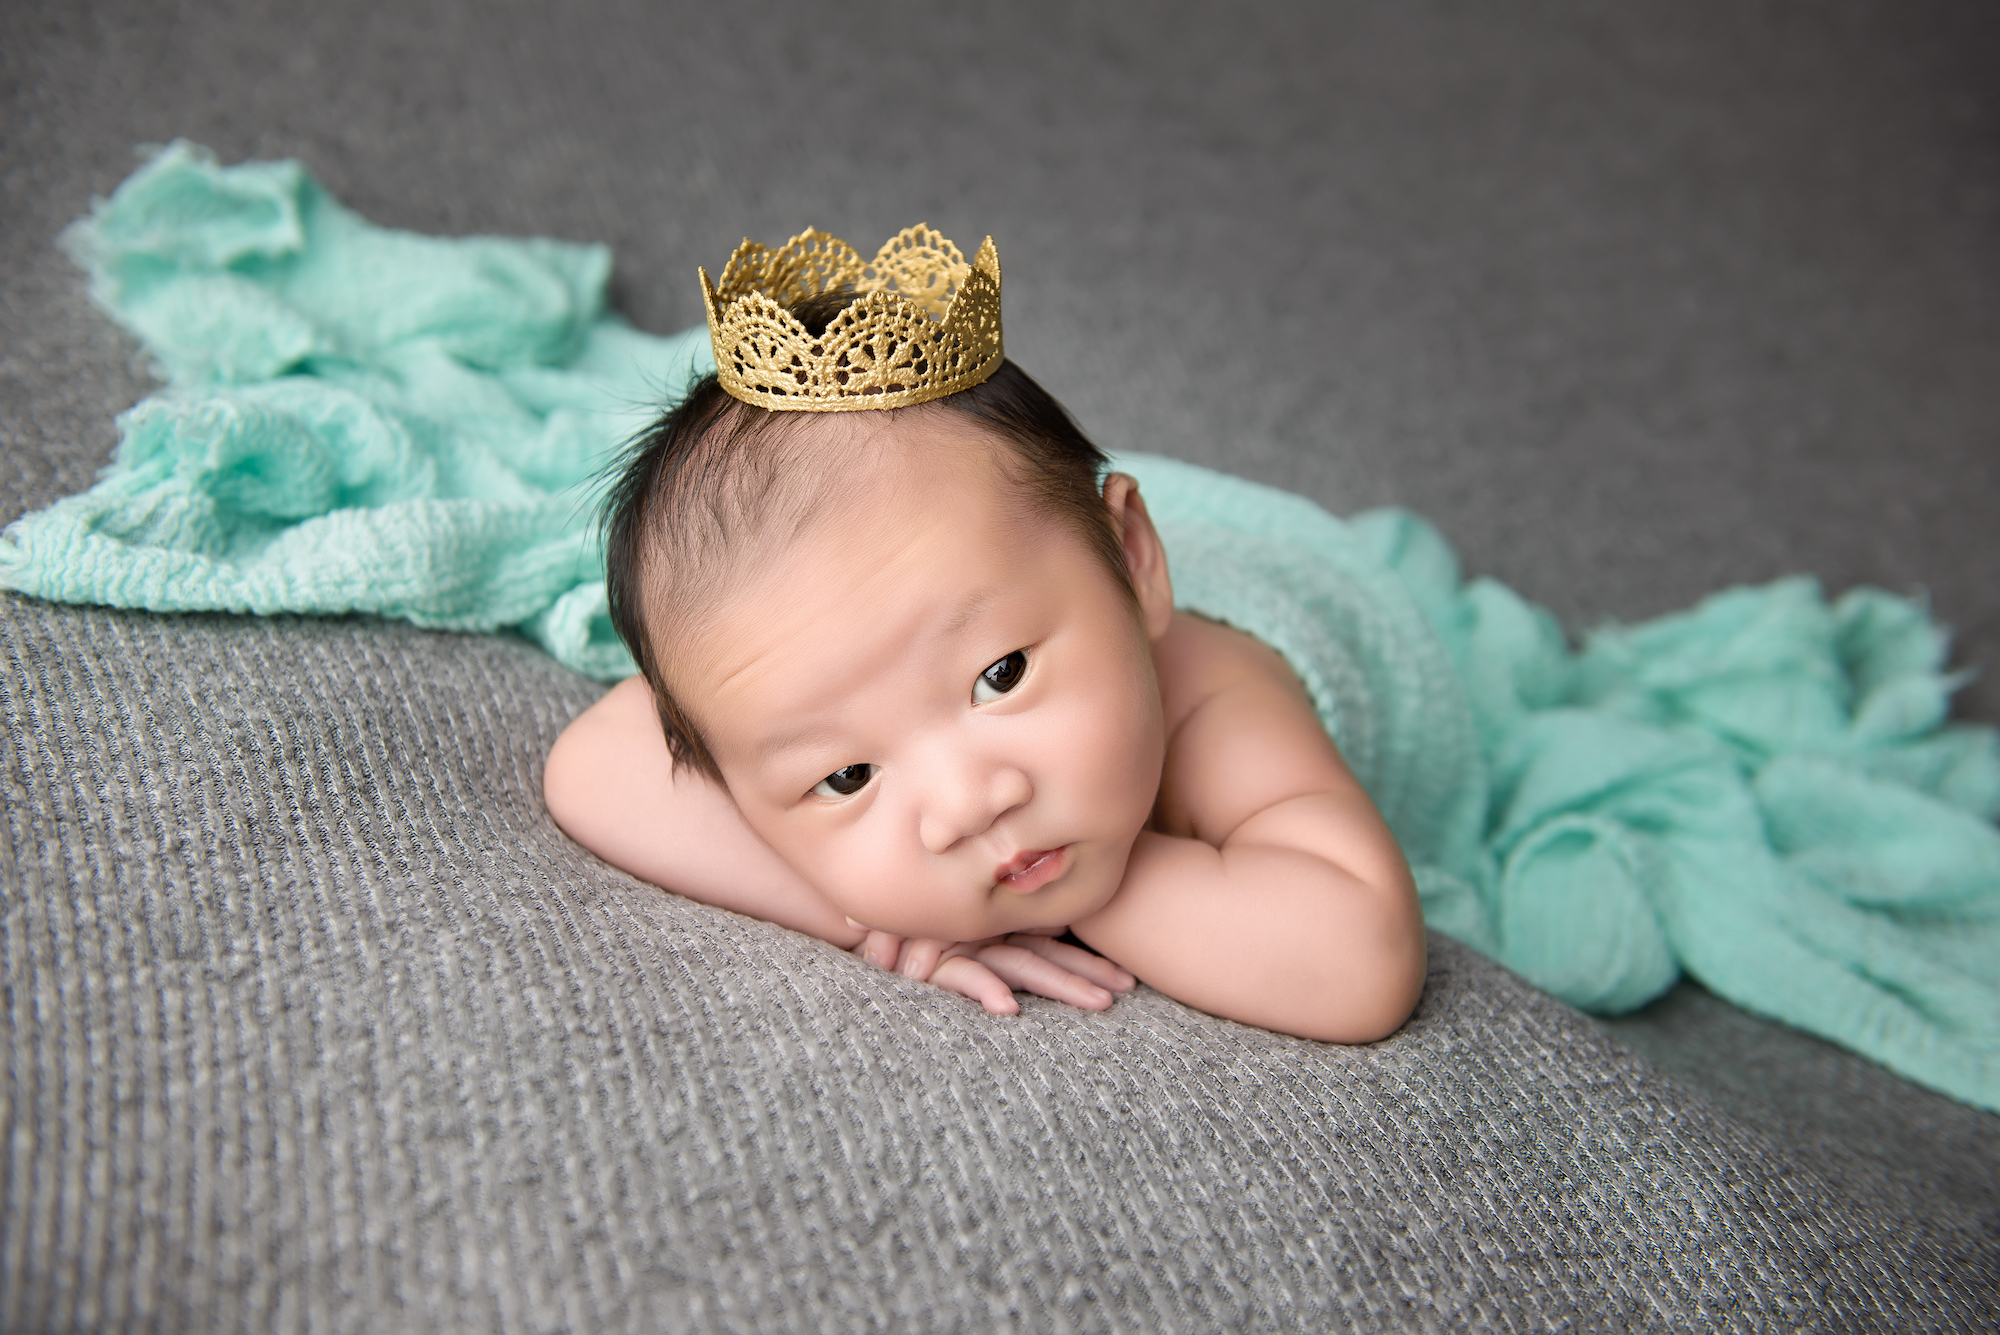 Newborn Baby Boy Wearing A Crown